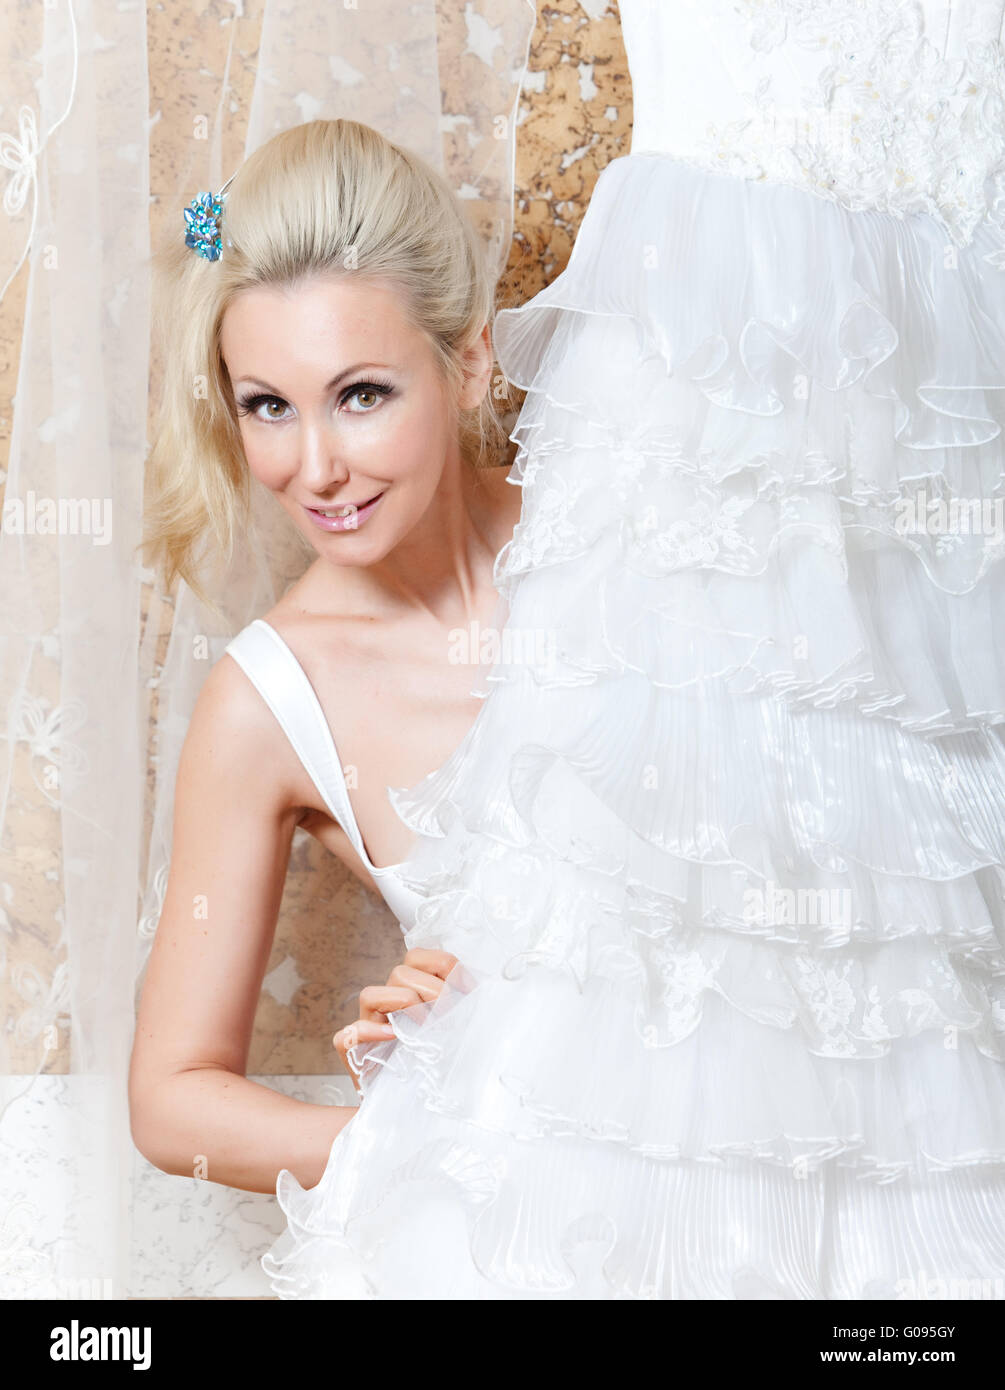 La jeune femme près d'une robe de mariage de rêves Banque D'Images